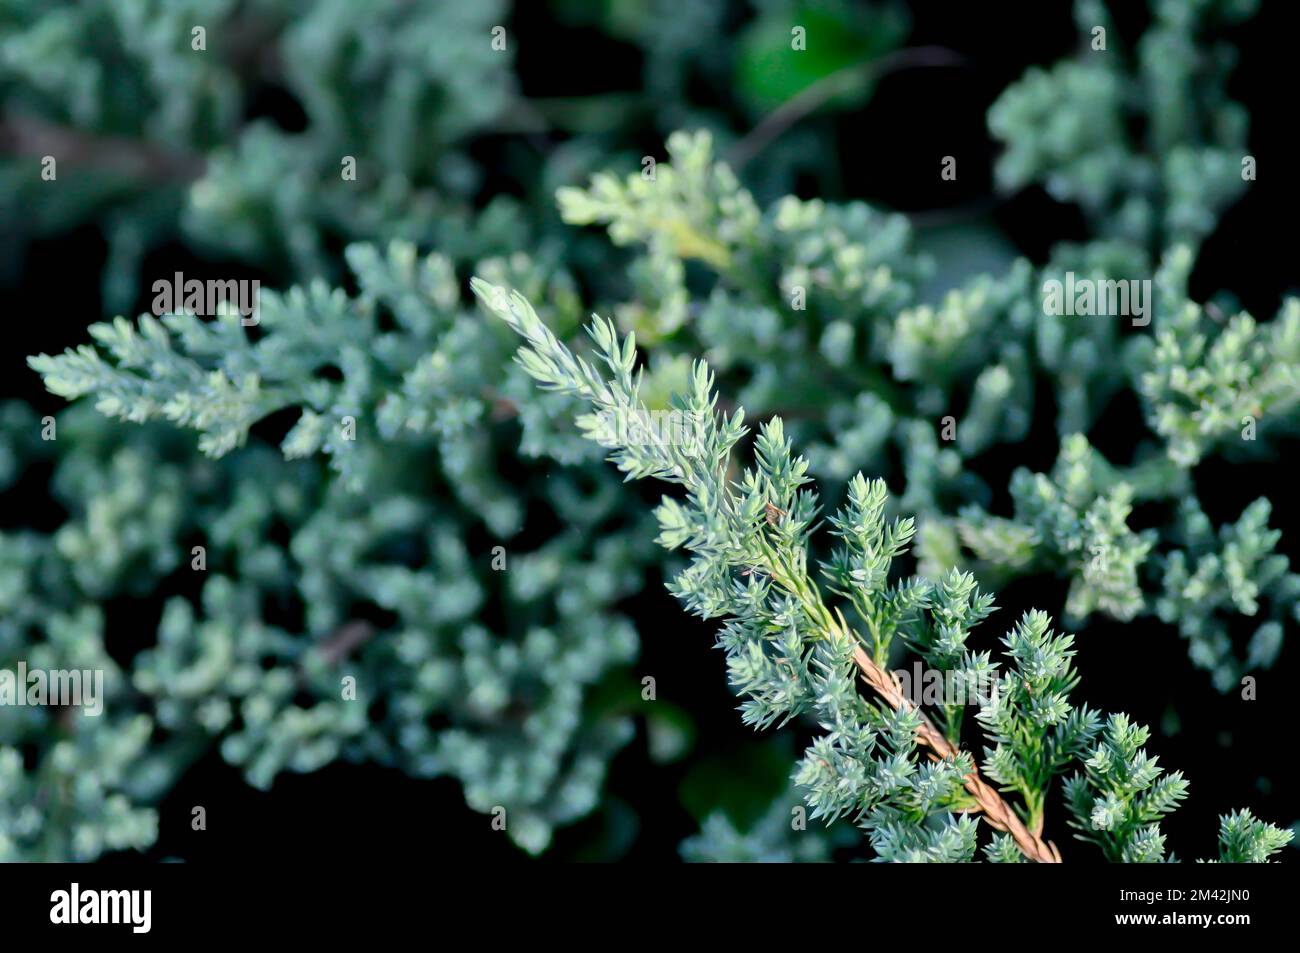 Juniperus procumbens ,Cupressaceae or Creeping Juniper or pine tree in the garden Stock Photo